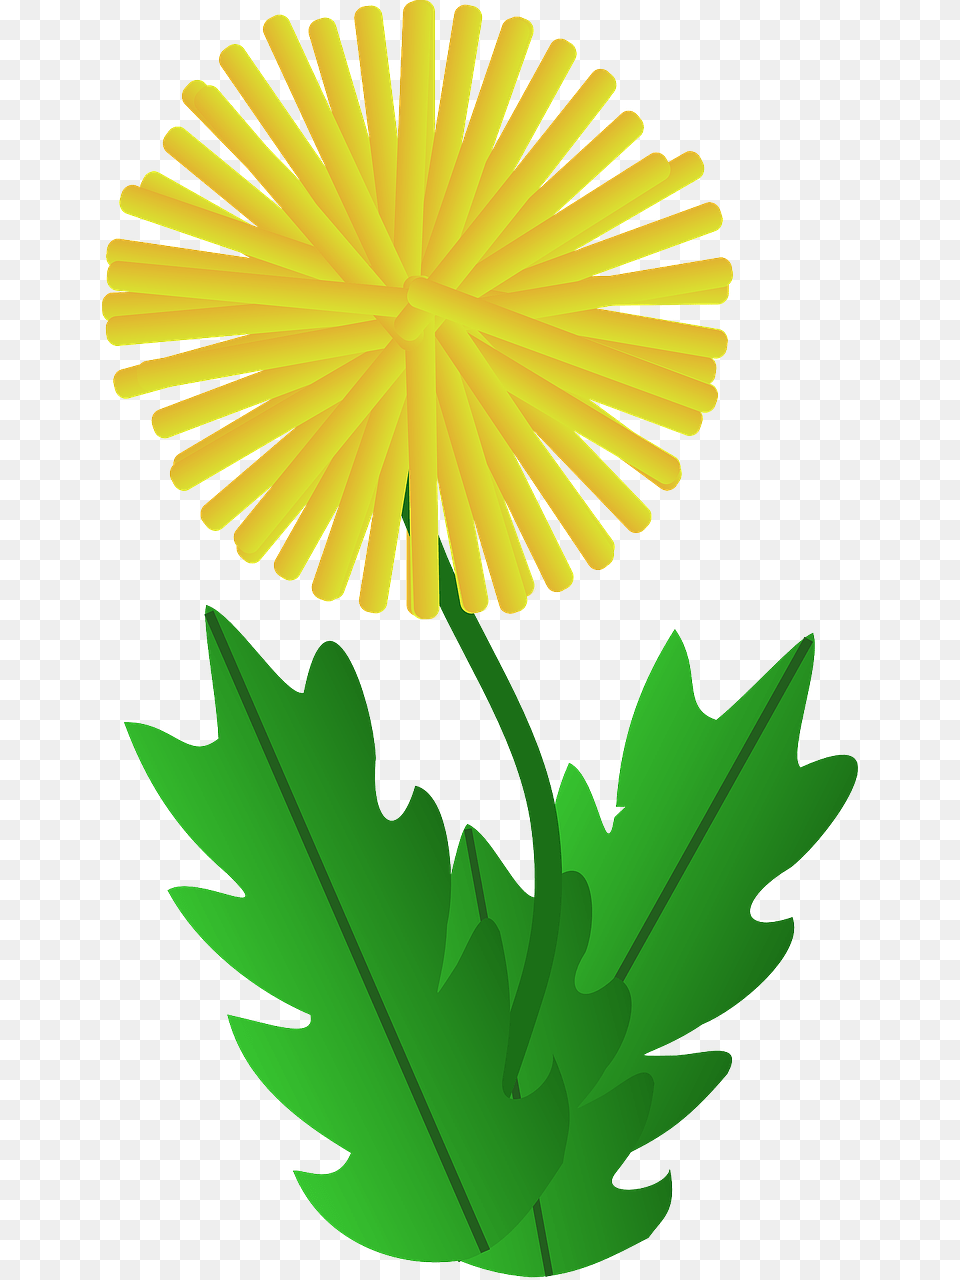 Dandelion Clipart Download Dandelion Clipart, Flower, Leaf, Plant, Daisy Png Image